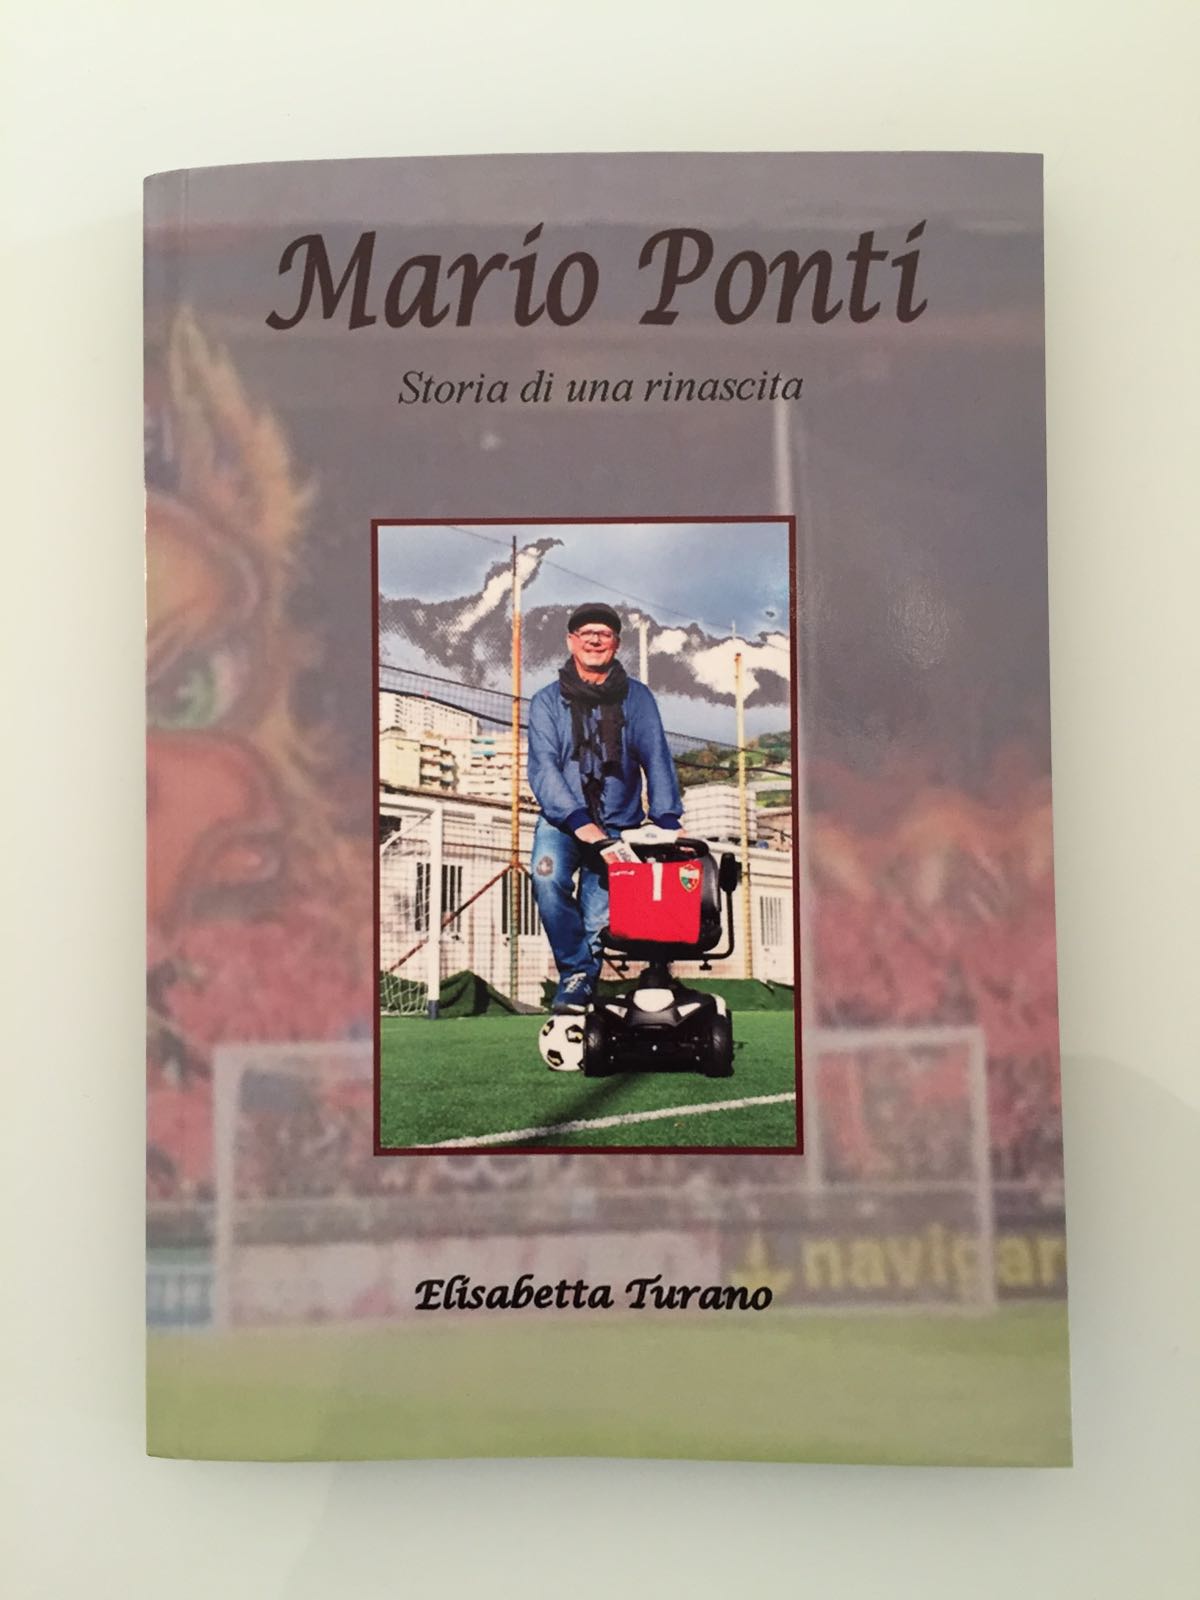 Mario Ponti e la sua “Storia di una rinascita”: «Una biografia che parla di  vita, malattia, sport e amore»